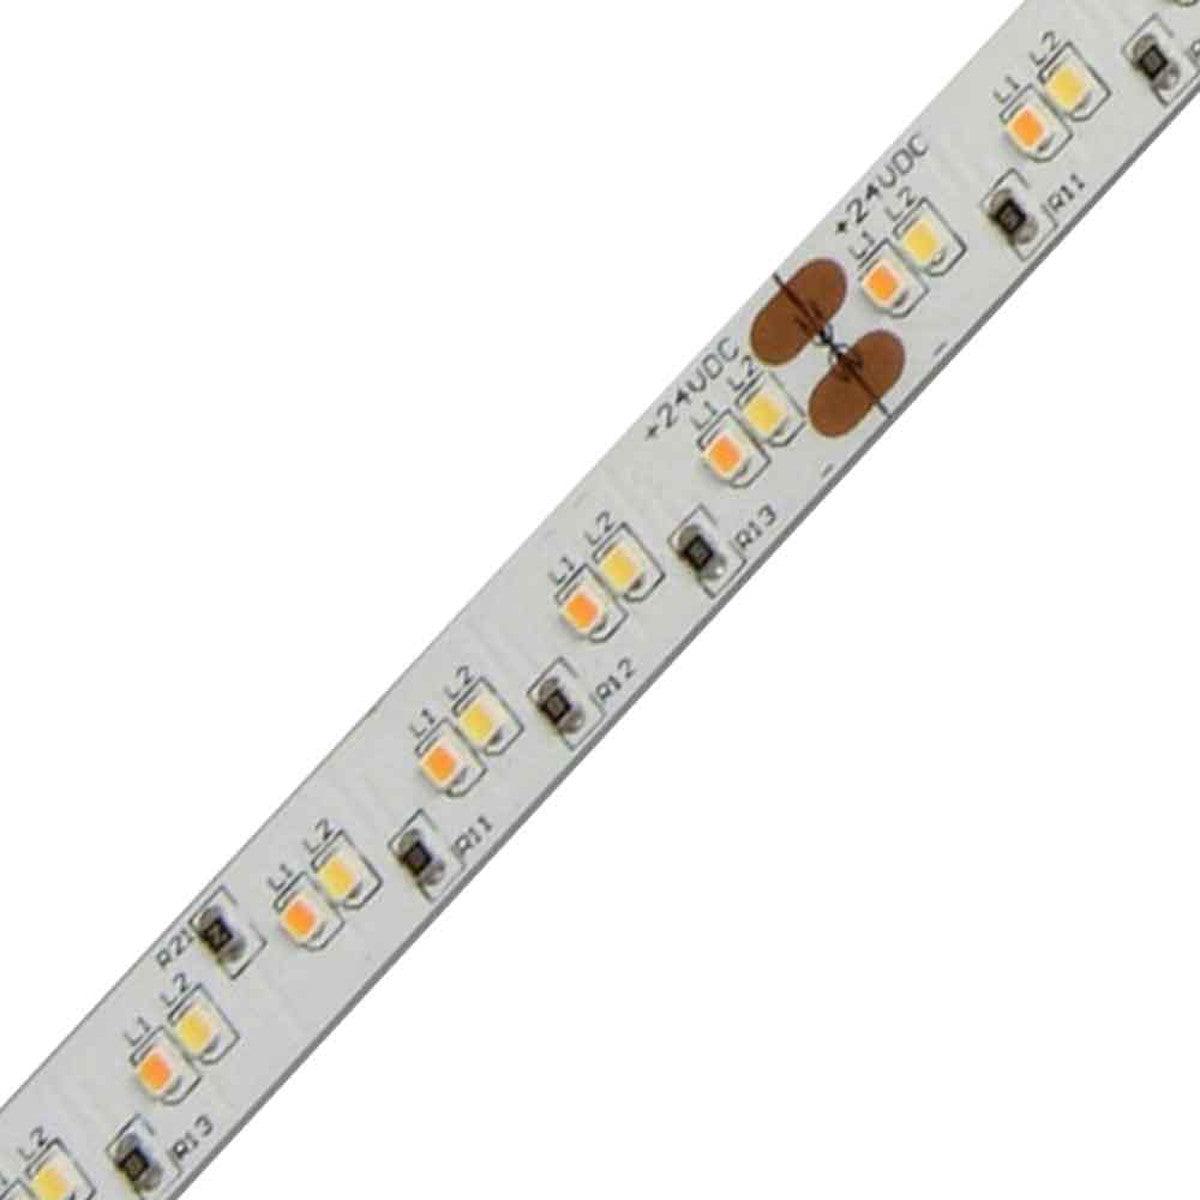 LTR-S Spec LED Strip Light, 16ft Reel, Dim to Warm 3500K to 1800K, 194 Lumens per Ft, 24V - Bees Lighting